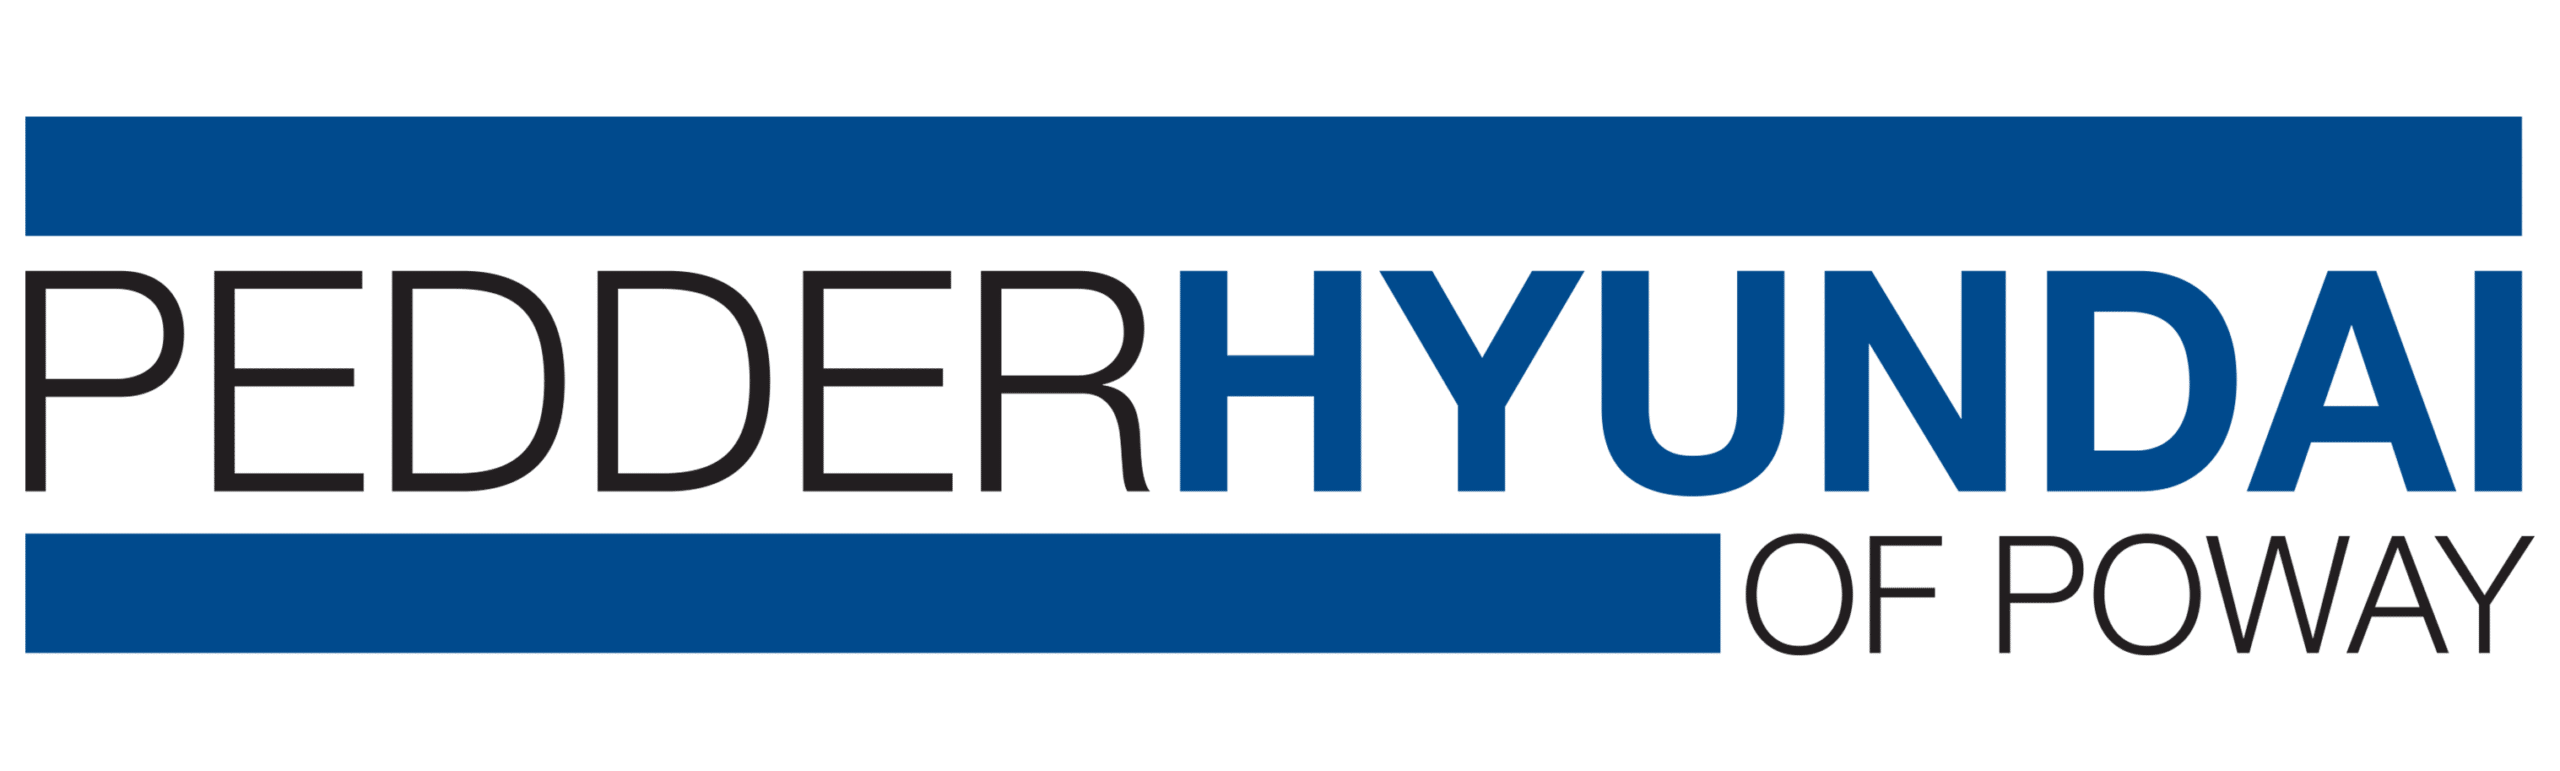 Pedder Hyundai